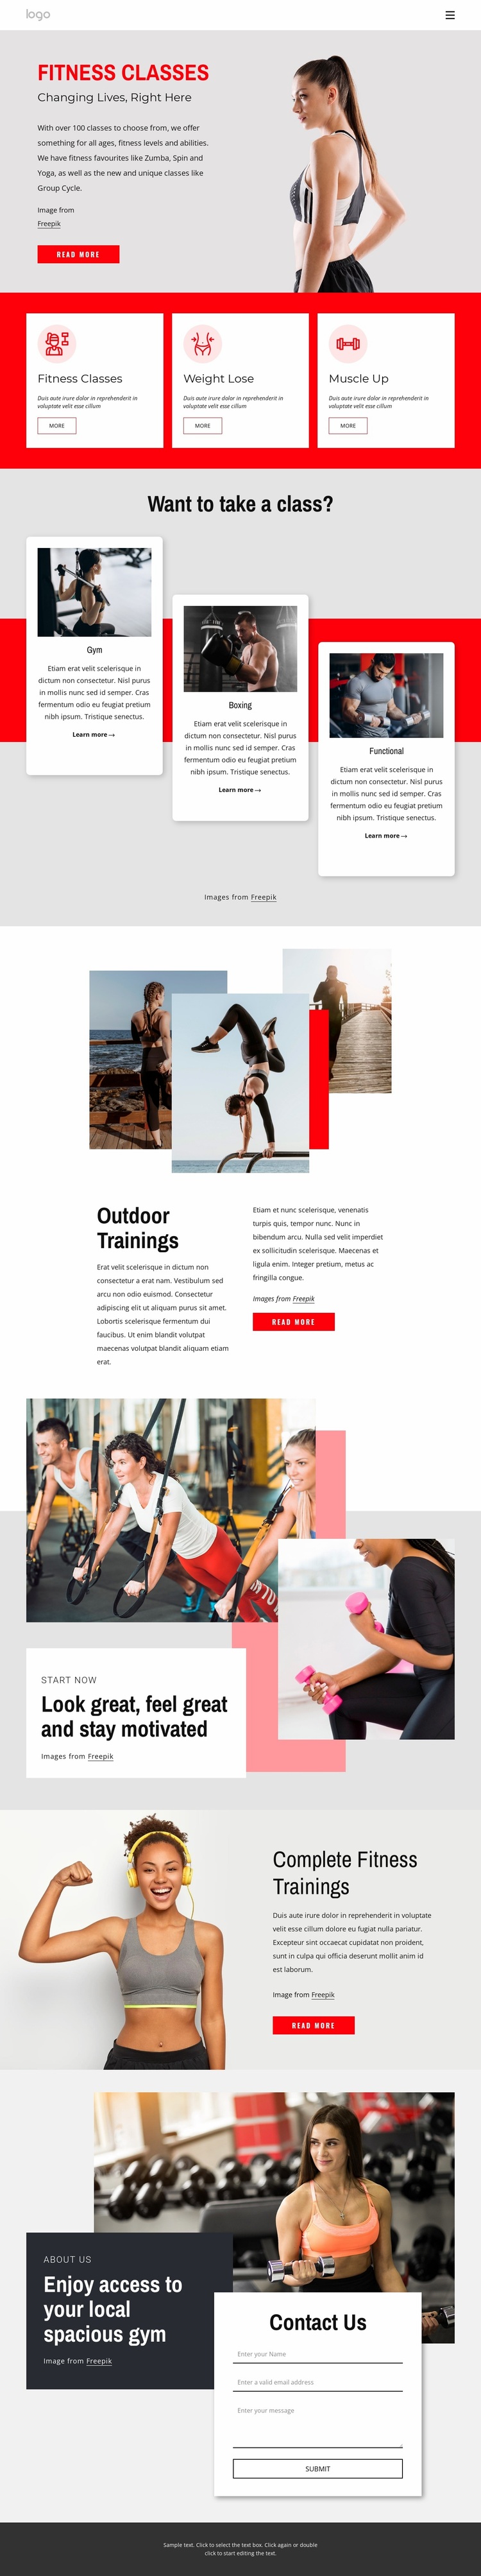 Full-spectrum fitness gym Website Design